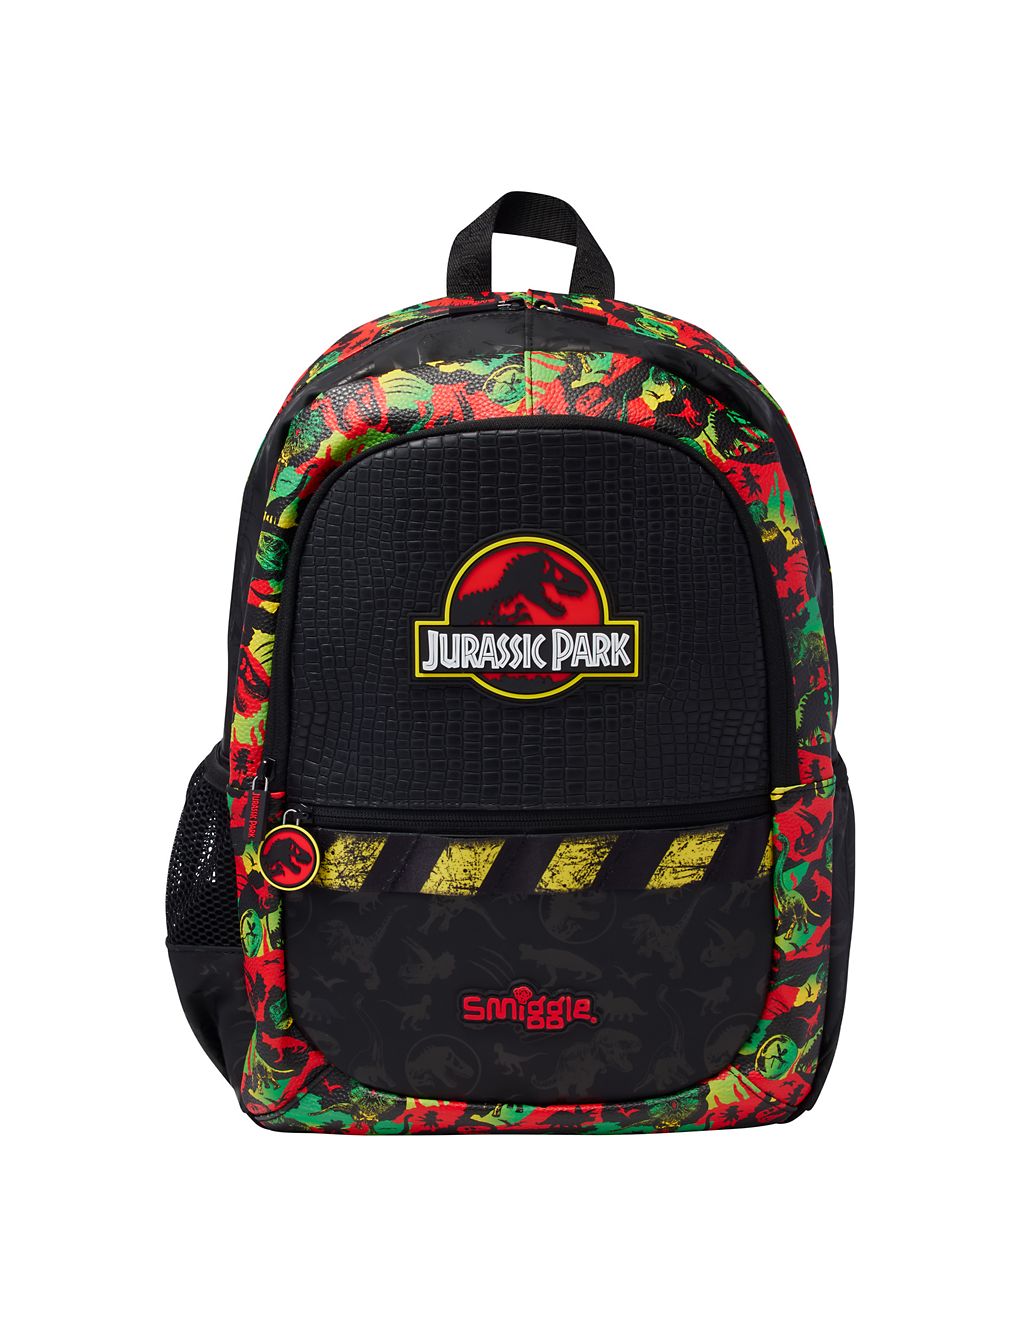 Kids' Jurassic Park Backpack 3 of 3